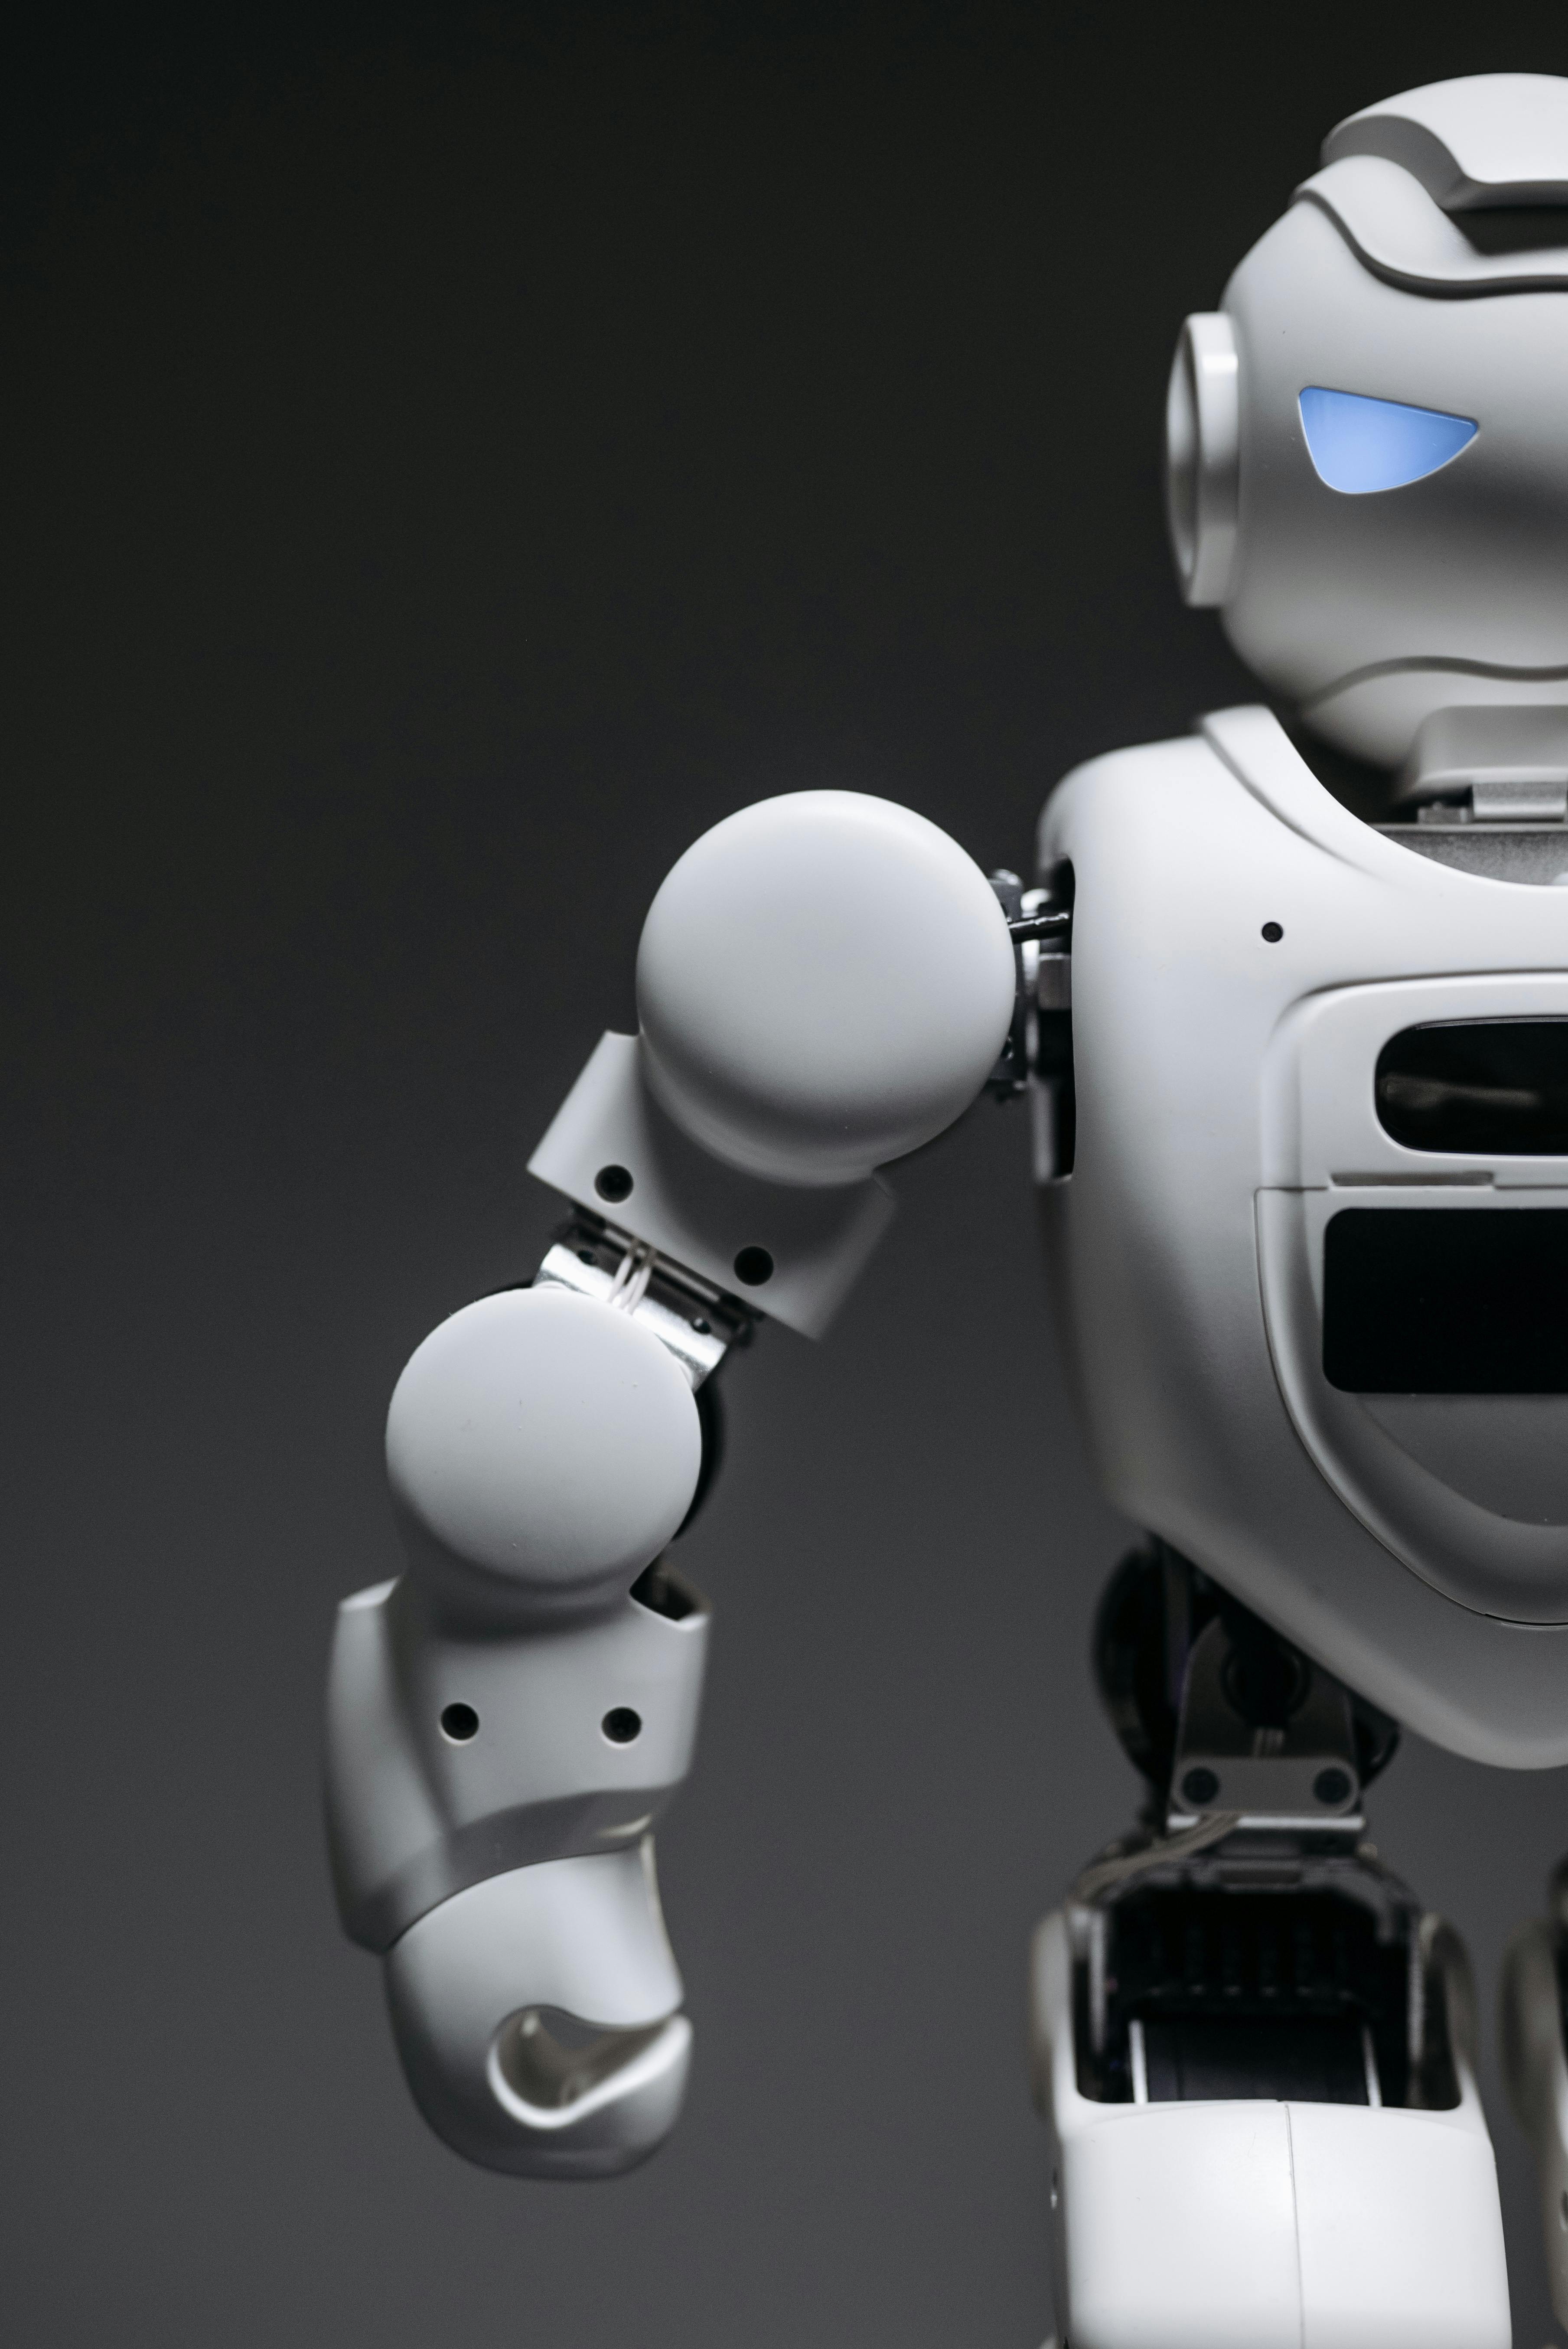 Robotics Photos, Download The BEST Free Robotics Stock Photos & HD Images